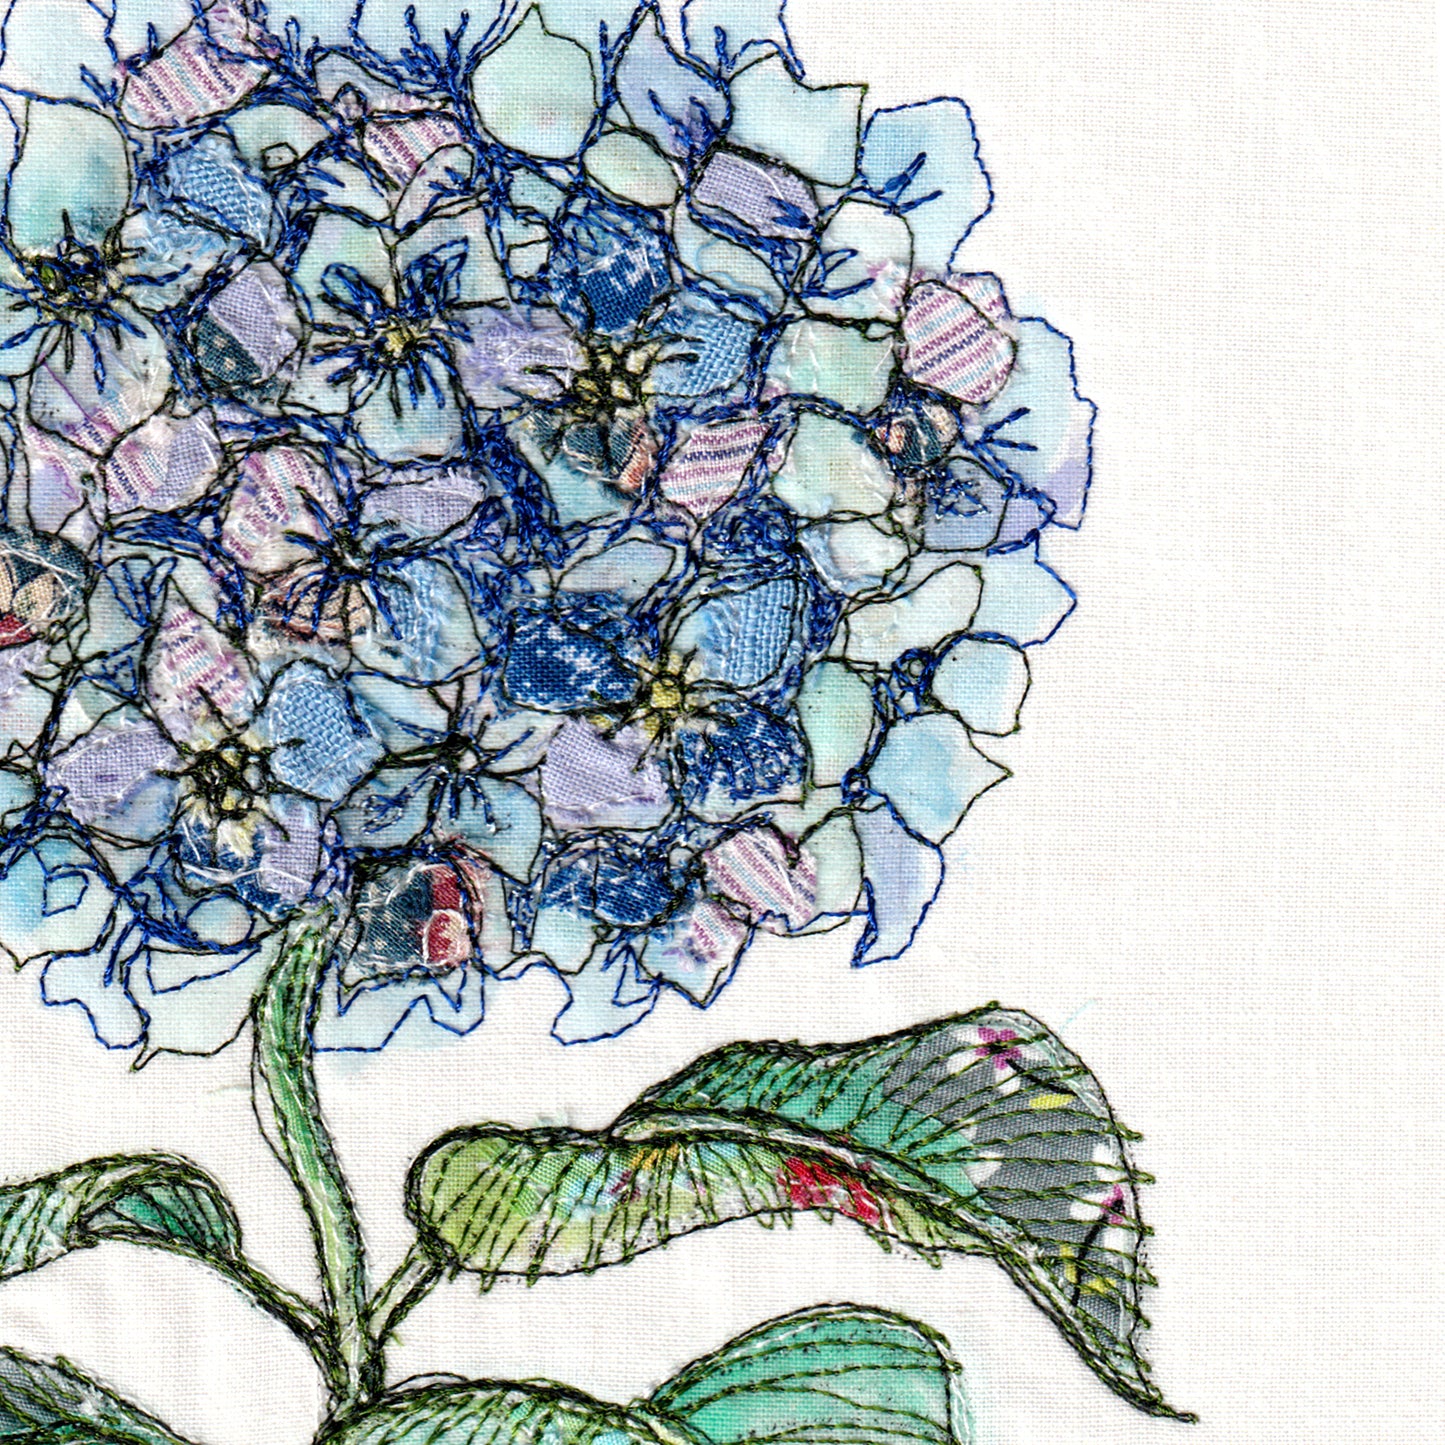 Midsummer Gather Embroidery Art Card